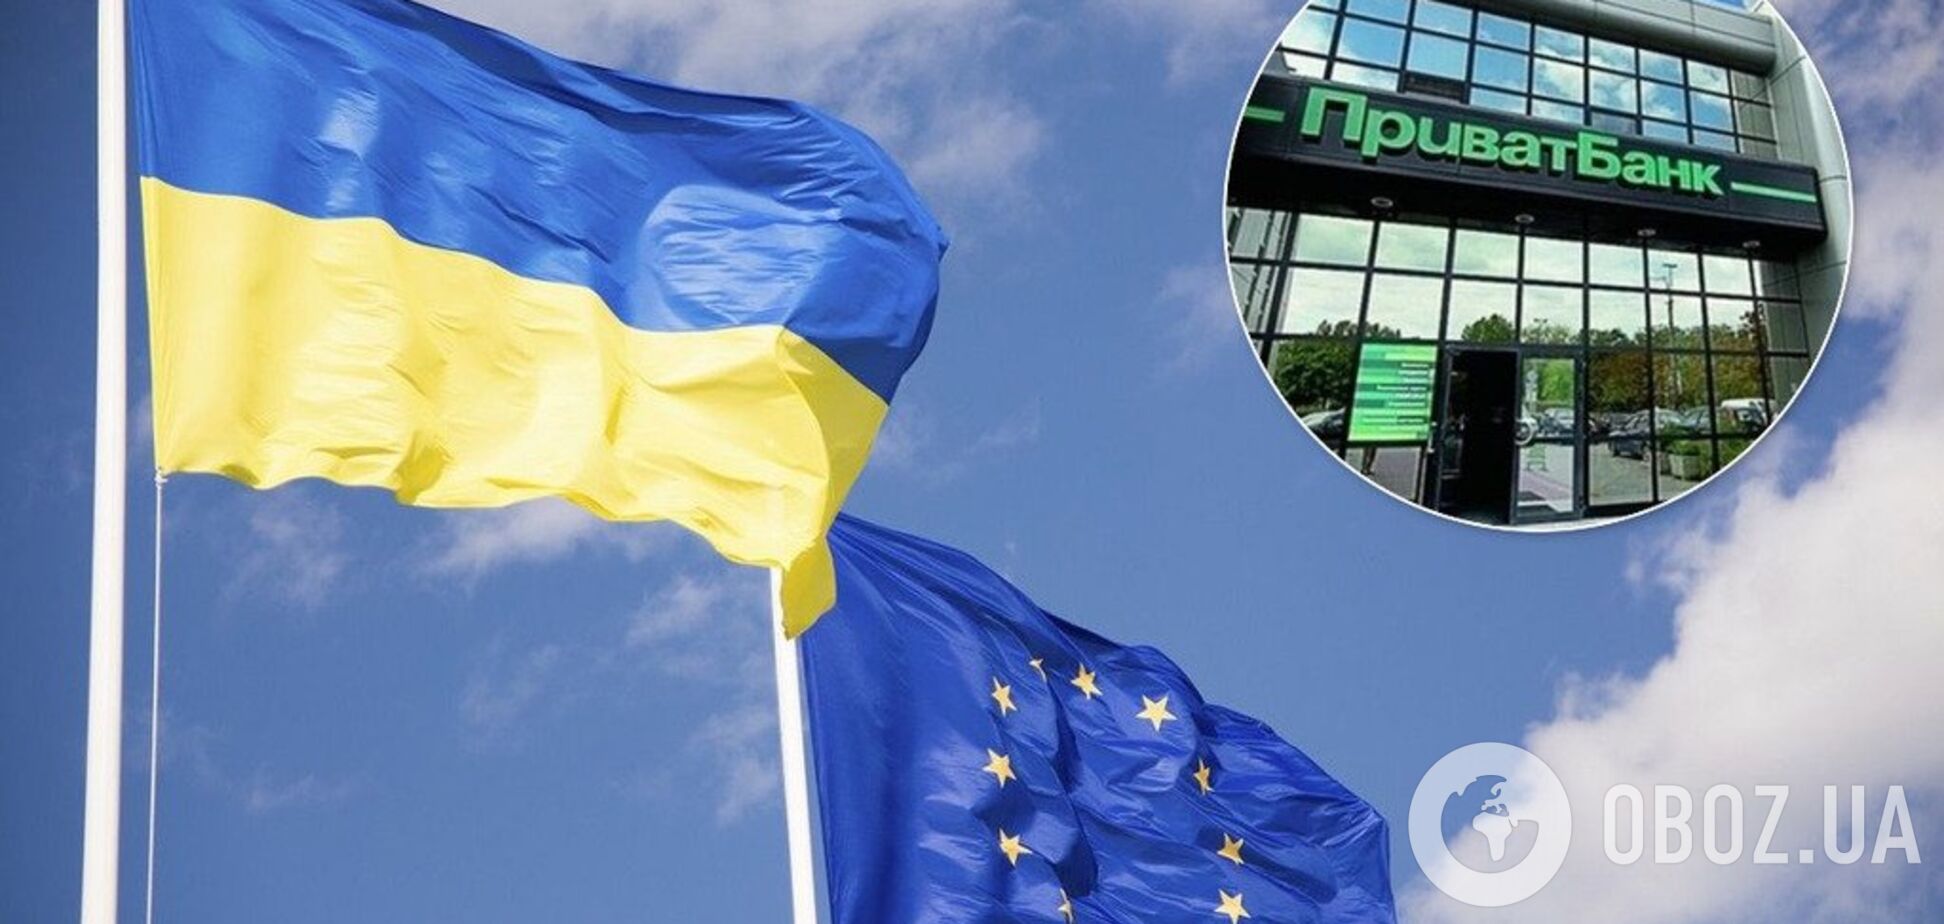 Привлечь к ответственности: ЕС обратился к Украине из-за ПриватБанка